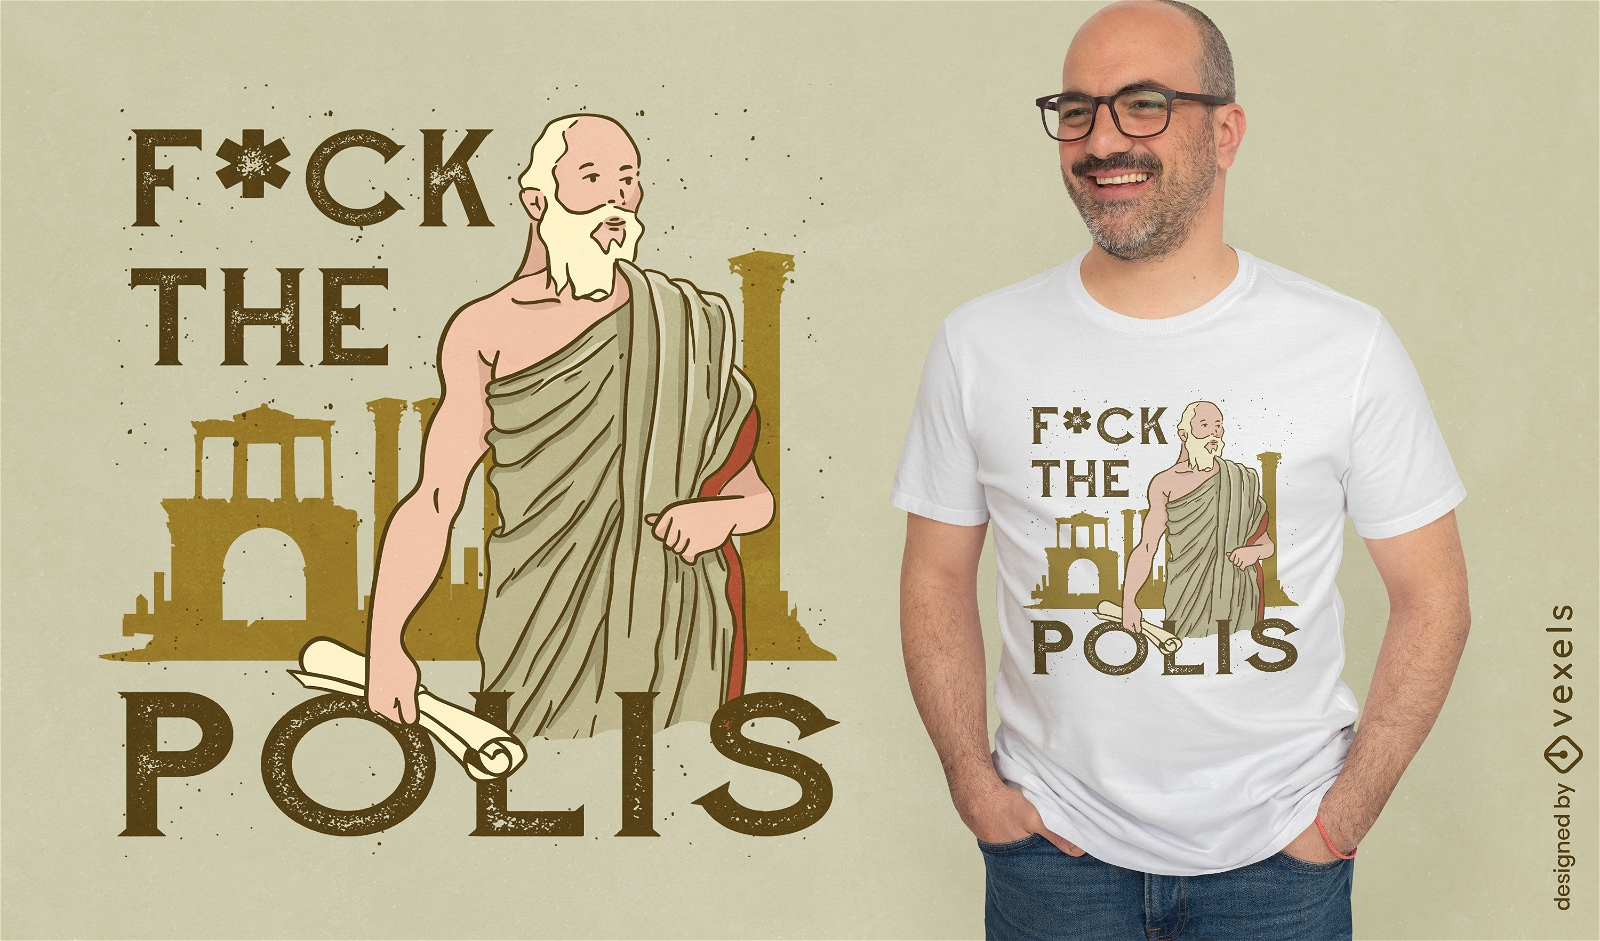 A la mierda el dise?o de camiseta de la antigua Grecia polis